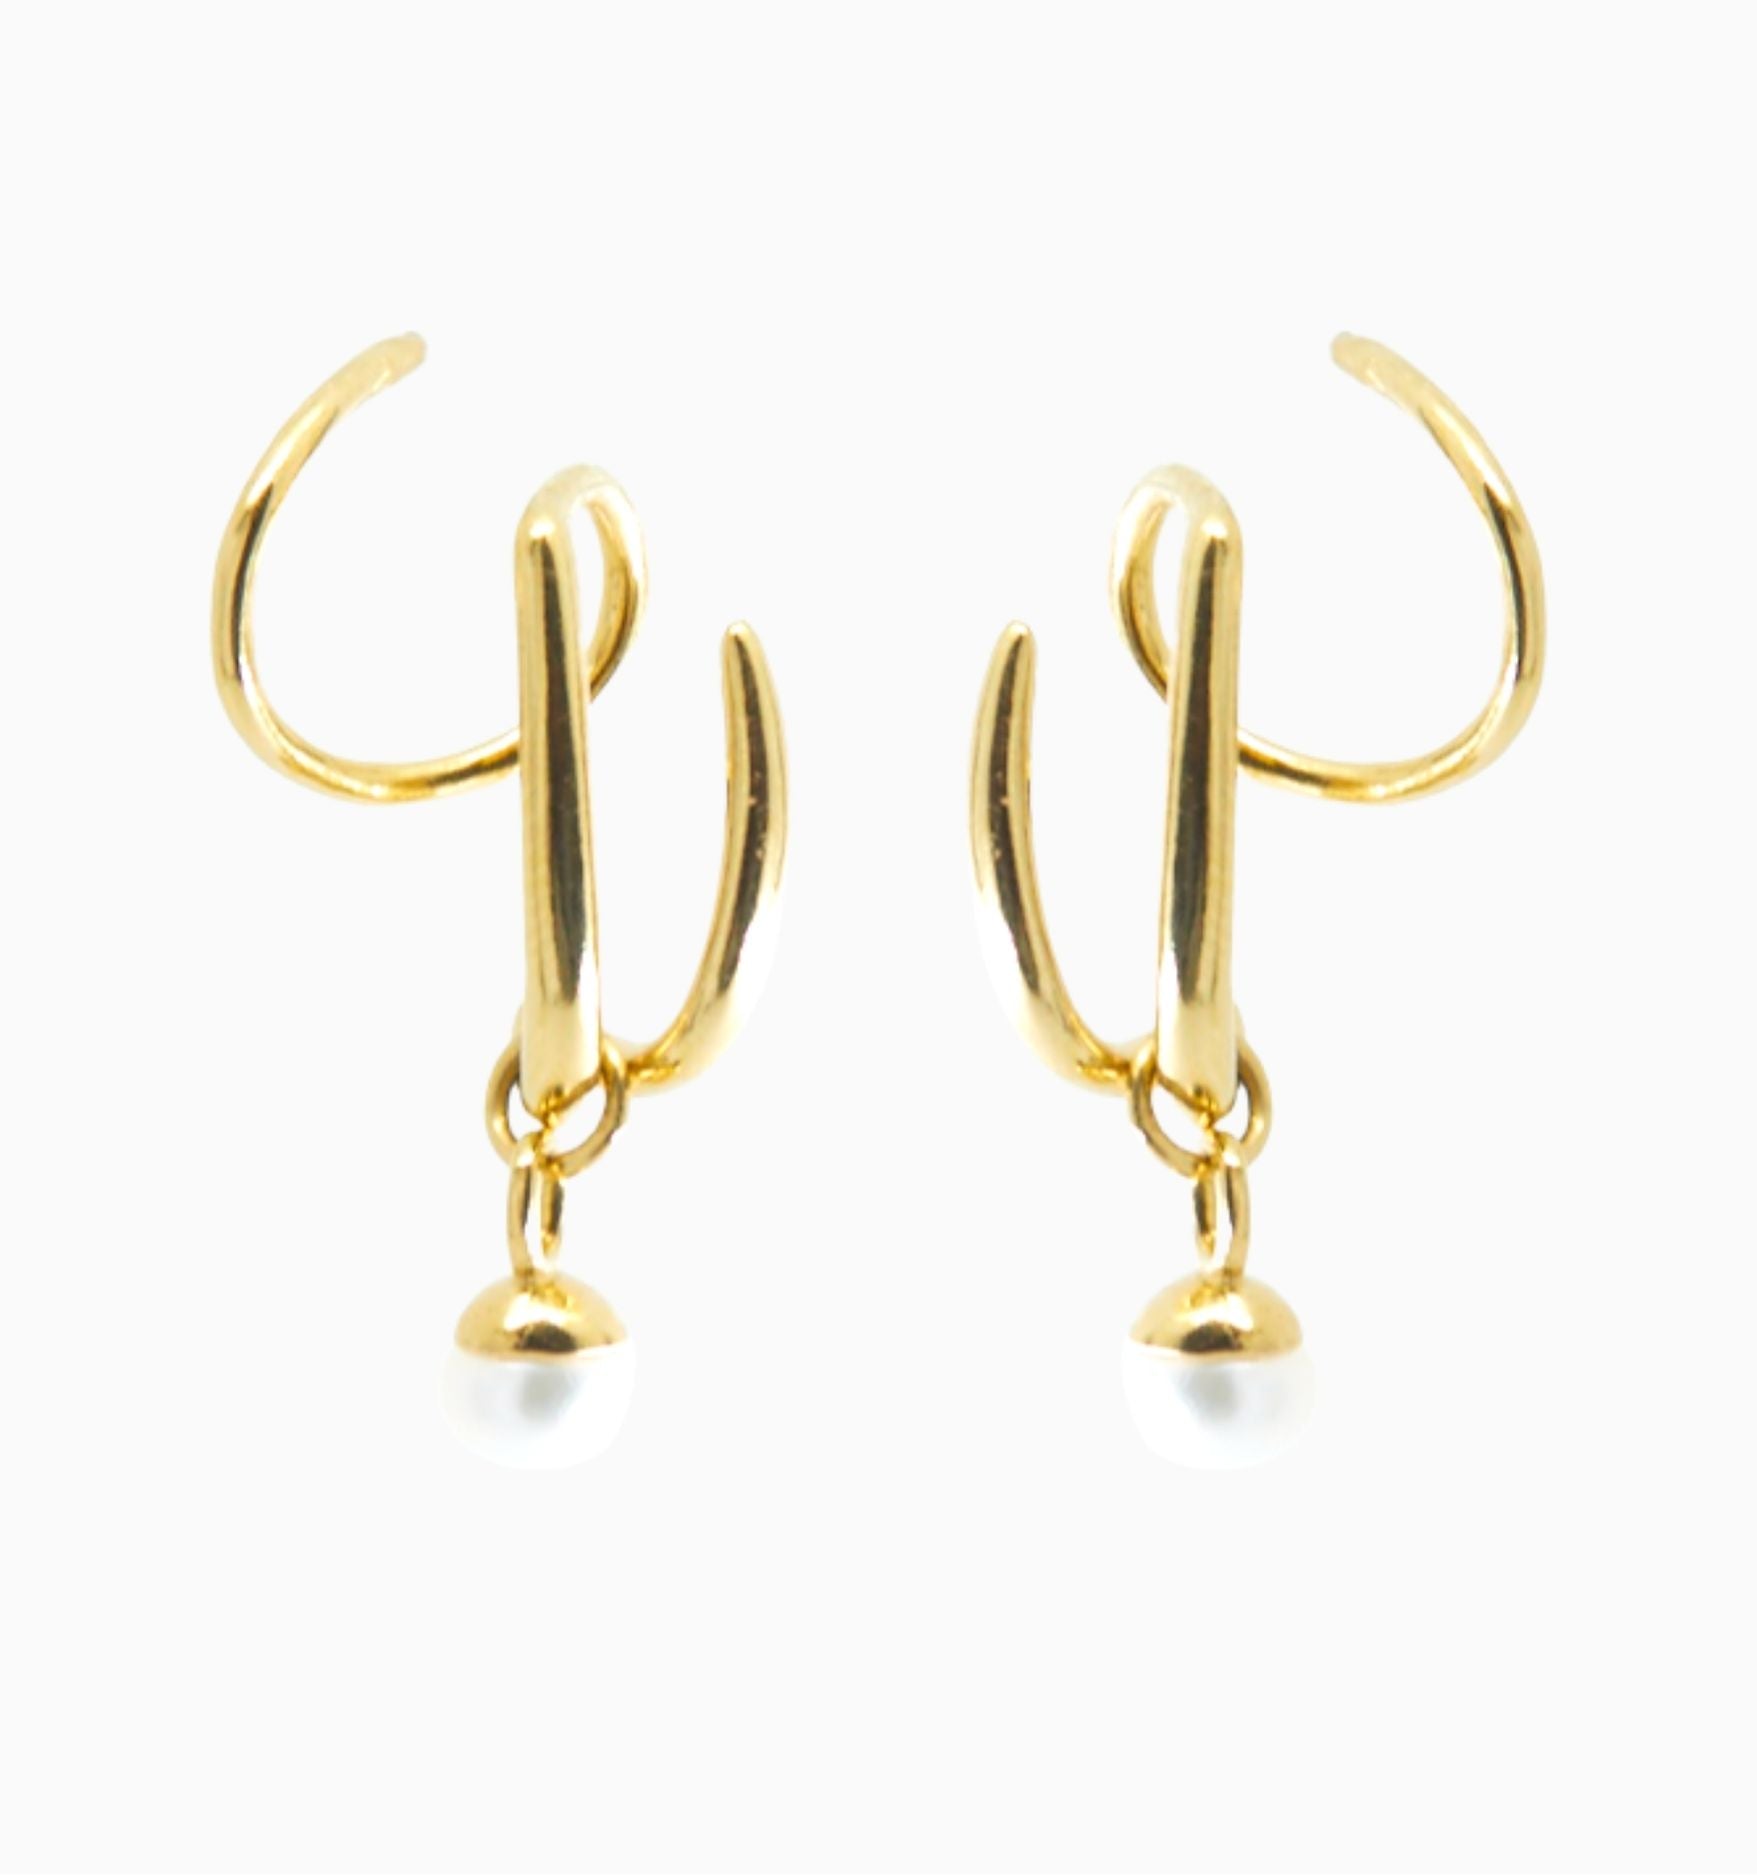 Triple Twist Hoops Pearl Earrings - Illusion Earrings